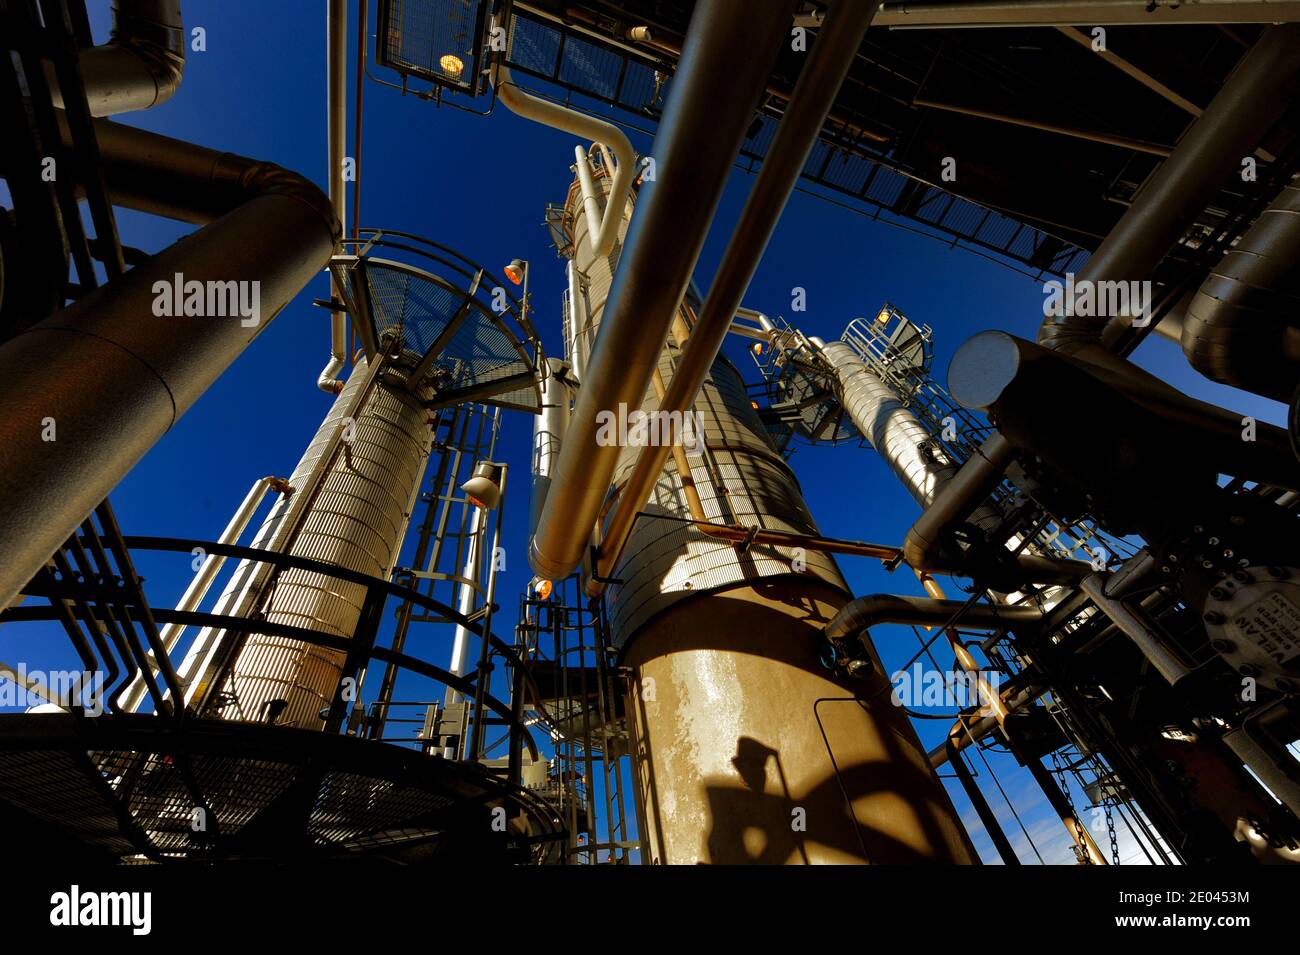 Raffineries de pétrole produisant du combustible, des produits chimiques, des plastiques et tous les produits dérivés du pétrole brut. Banque D'Images